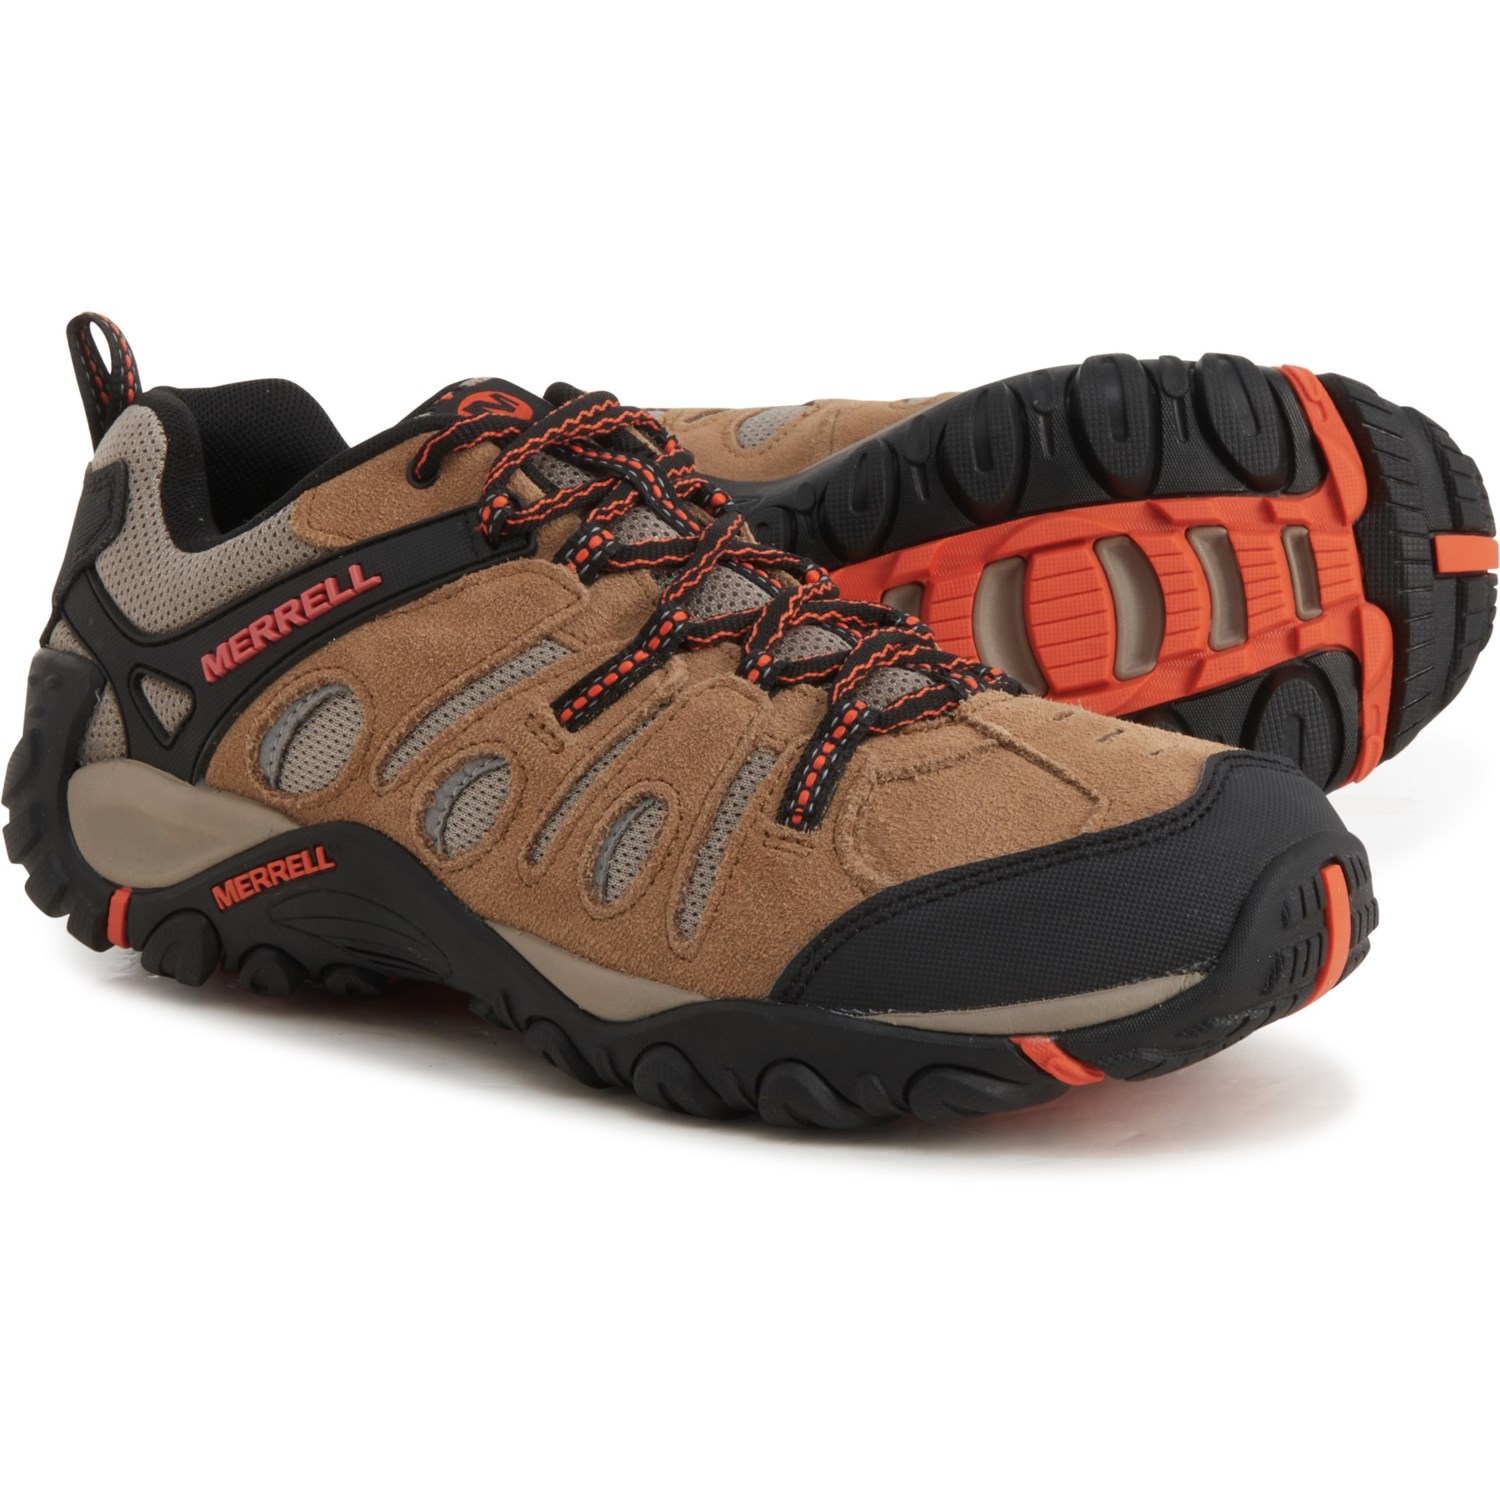 Merrell Crosslander Vent Hiking Shoes (For Men) - Save 38%